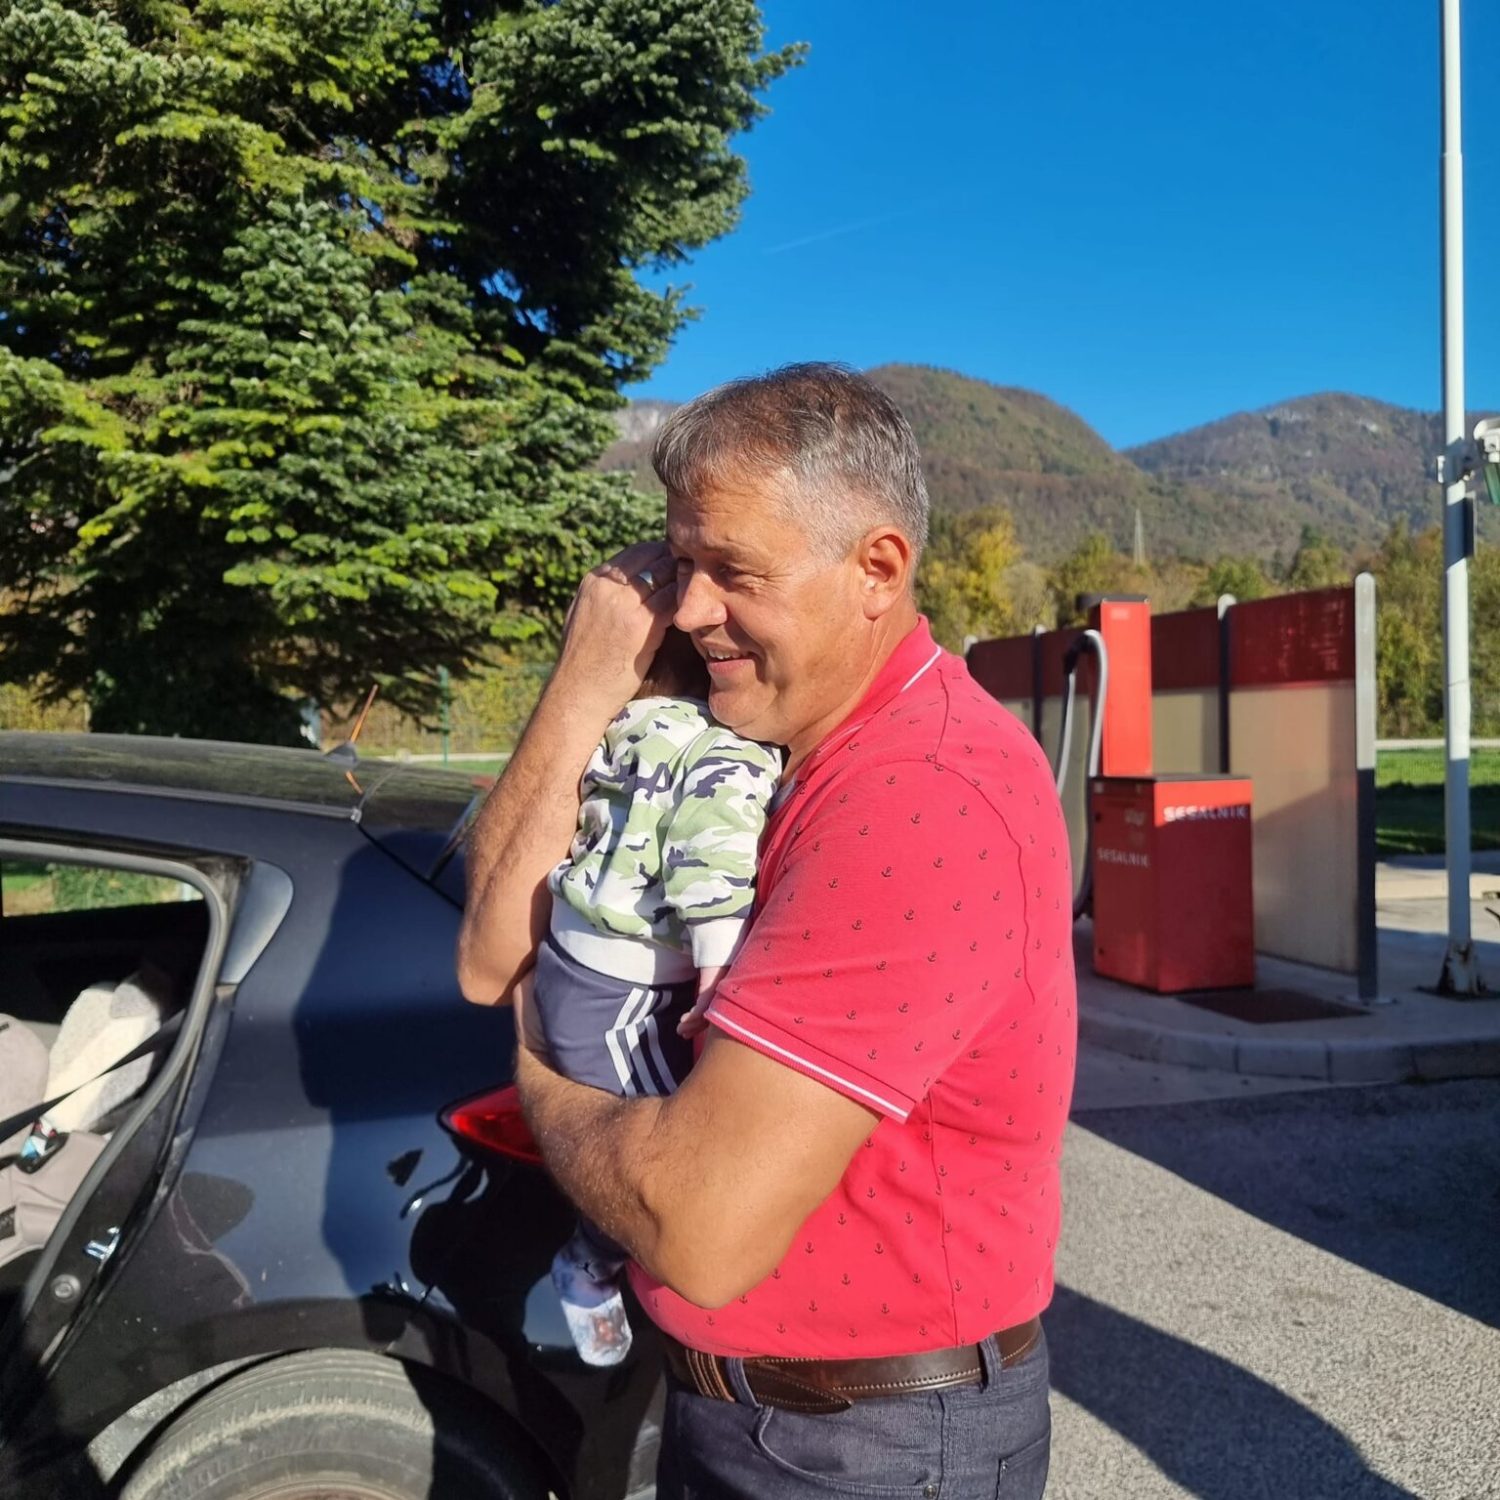 Priča sa sretnim završetkom zahvaljujući Bosancu: Midhat spasio dijete iz zaključanog auta, Life.ba